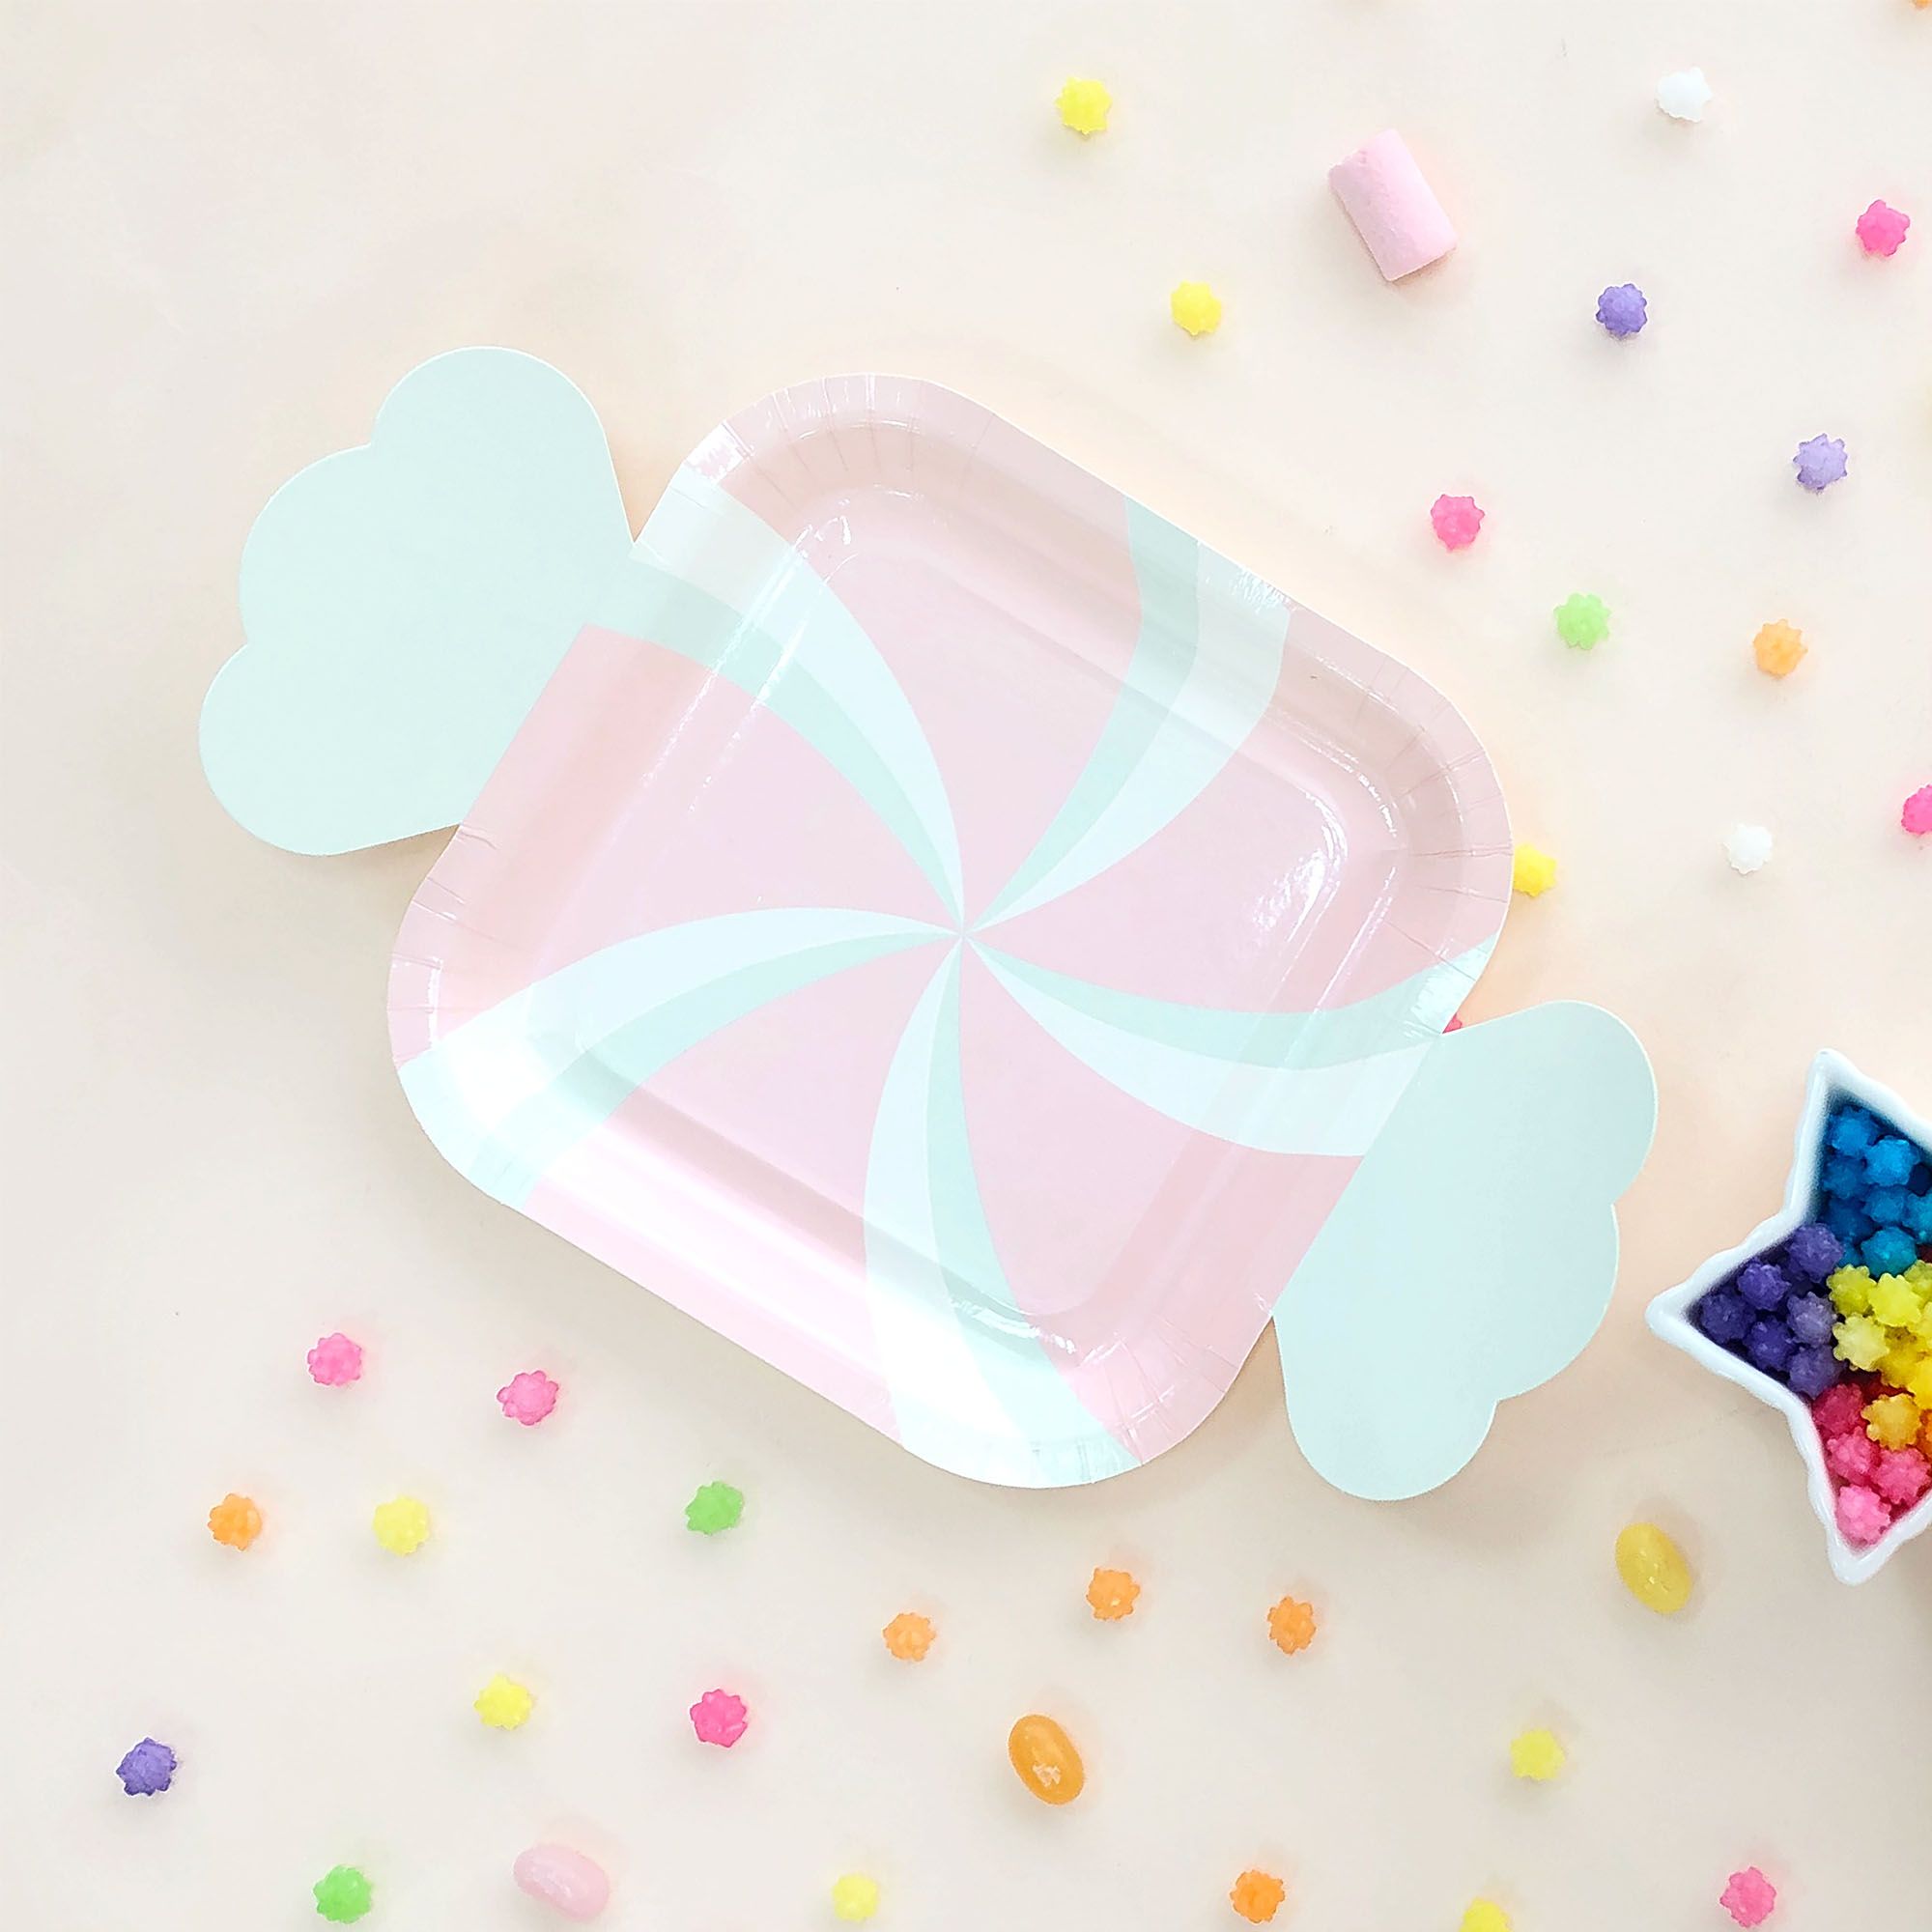 卡通造型糖果盤叉組適合使用在孩子們的生日派對，為派對桌添加更多童趣氛圍